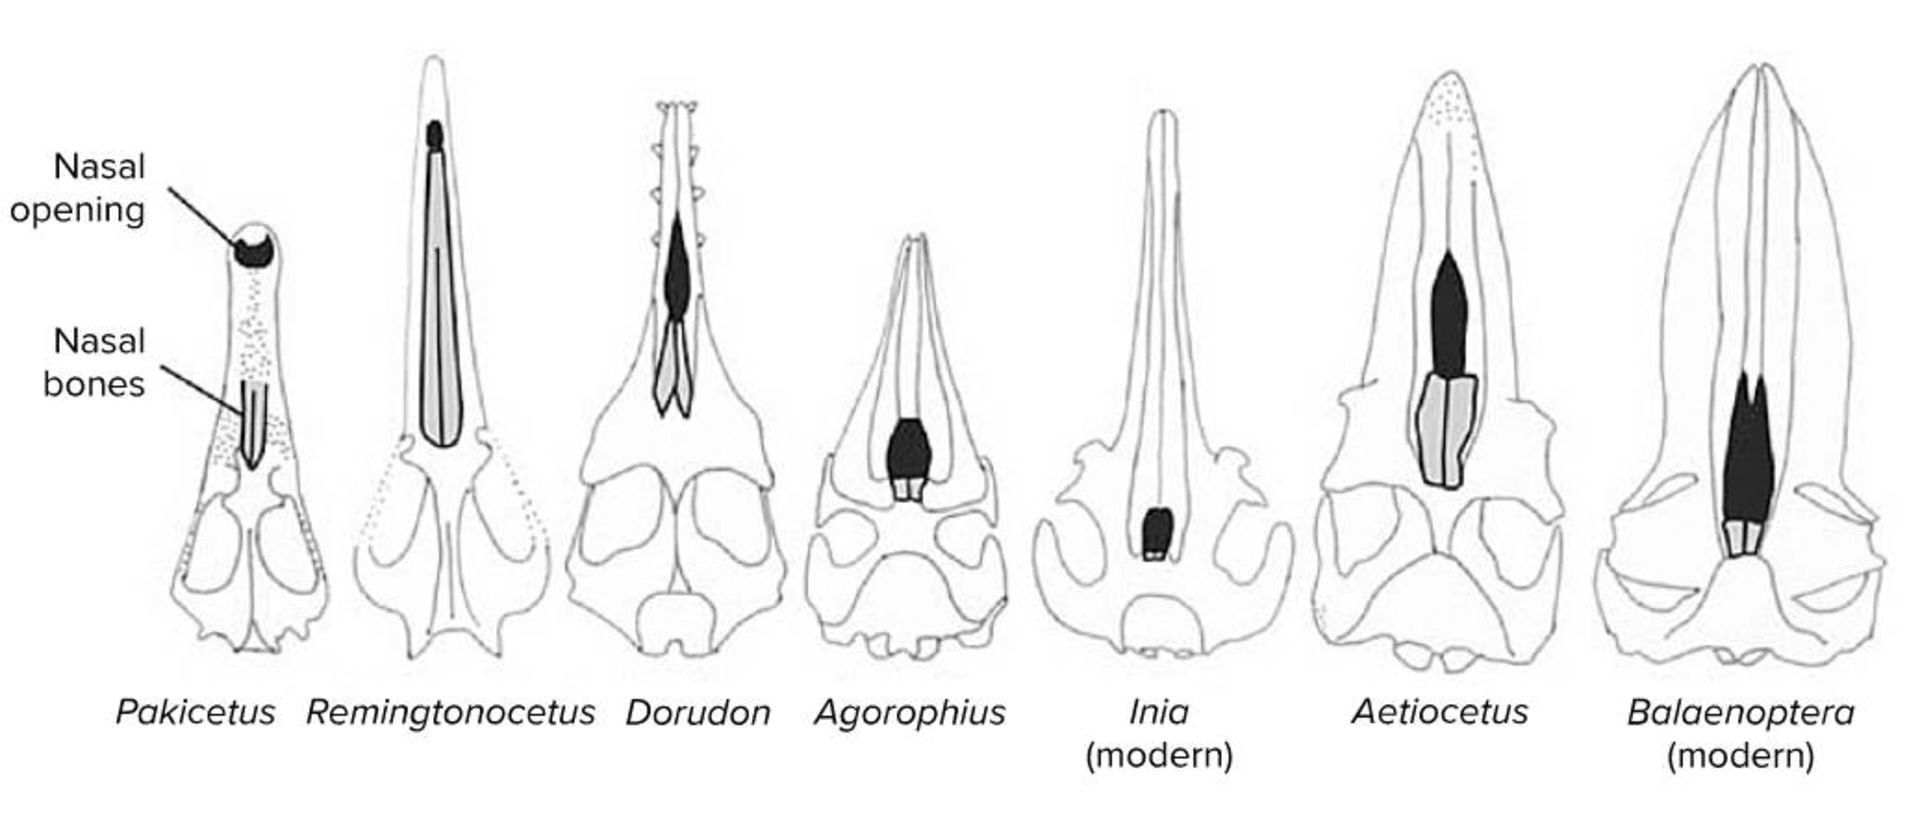 روند تکامل سوراخ تنفسی در نهنگان / nasal opening